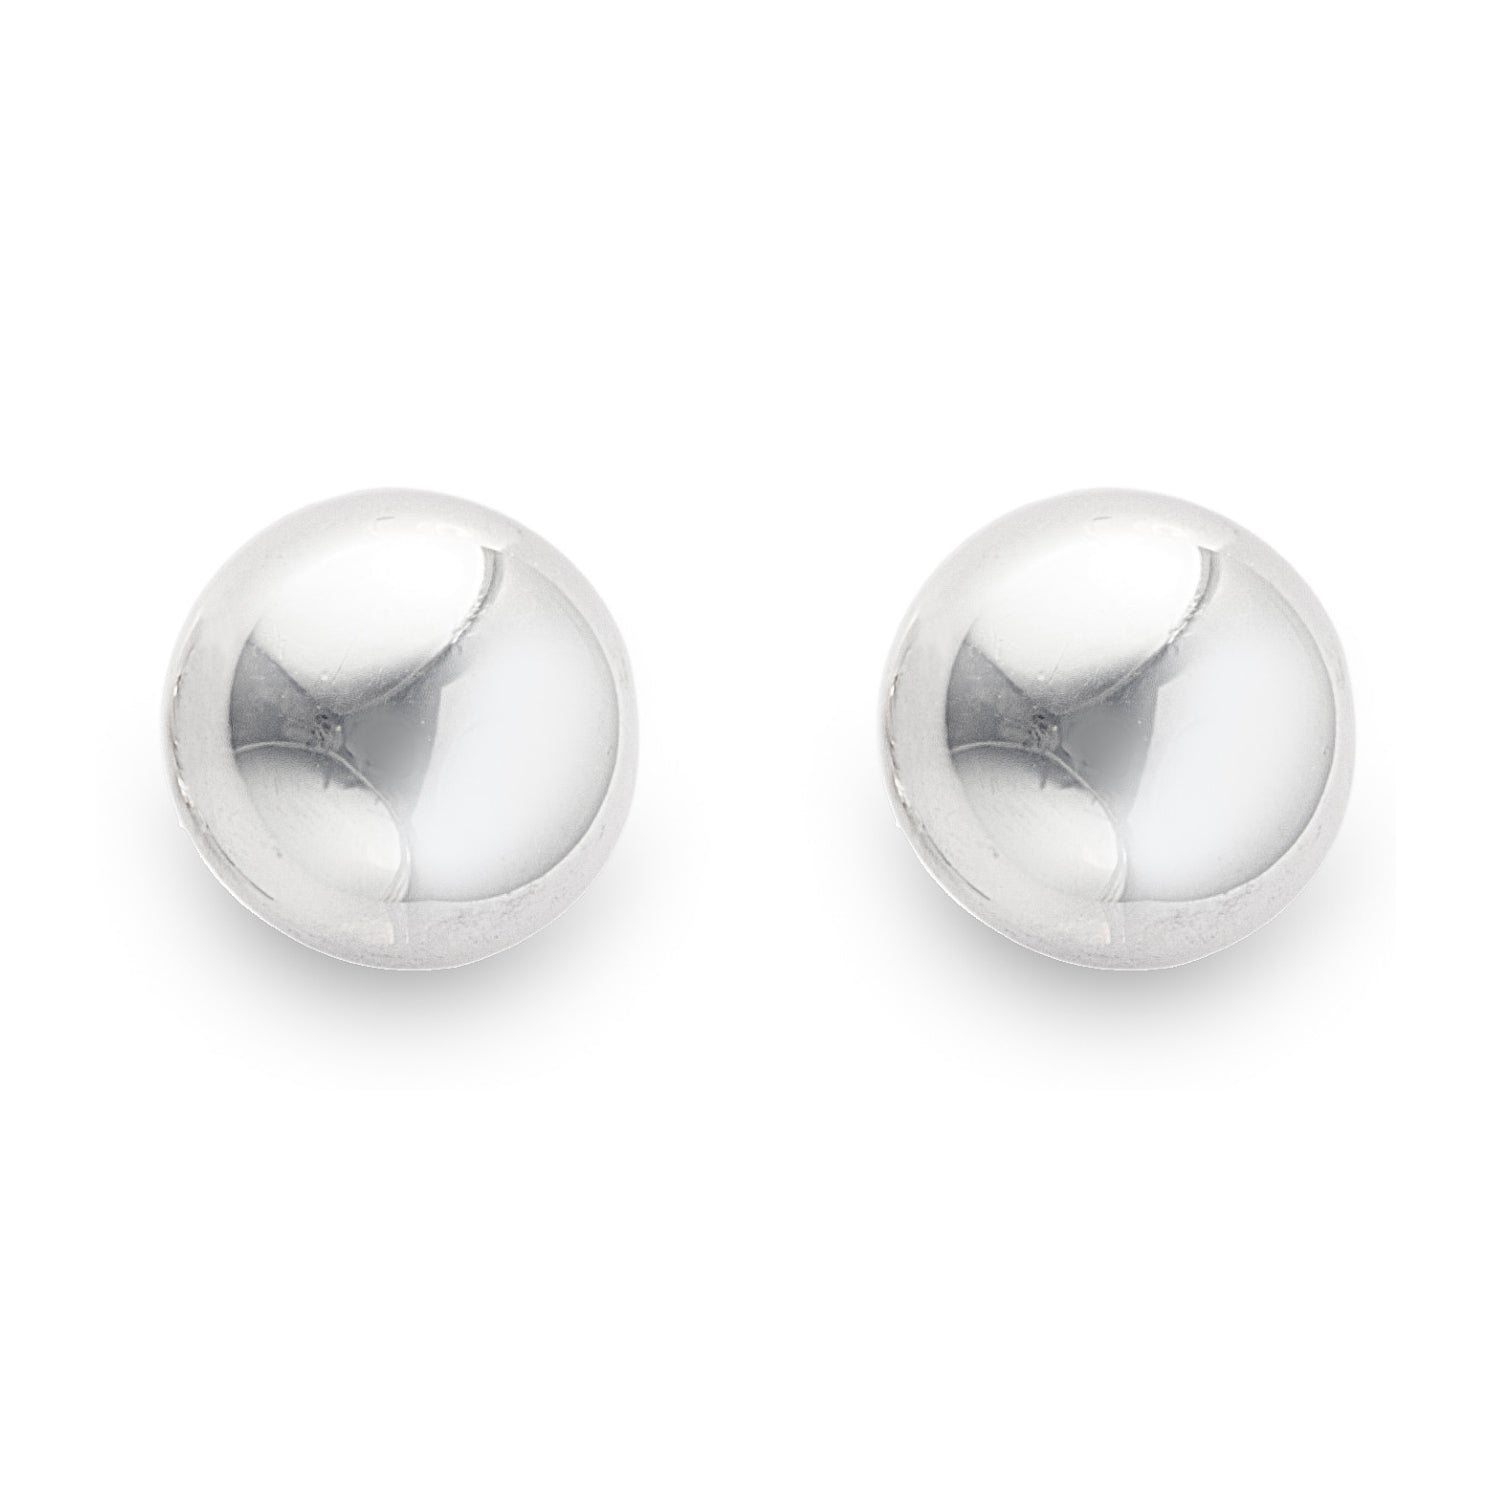 Mini Villa Ball Stud Earrings in 925 Sterling Silver. Worldwide shipping. Jewellery by Bellagio & Co.